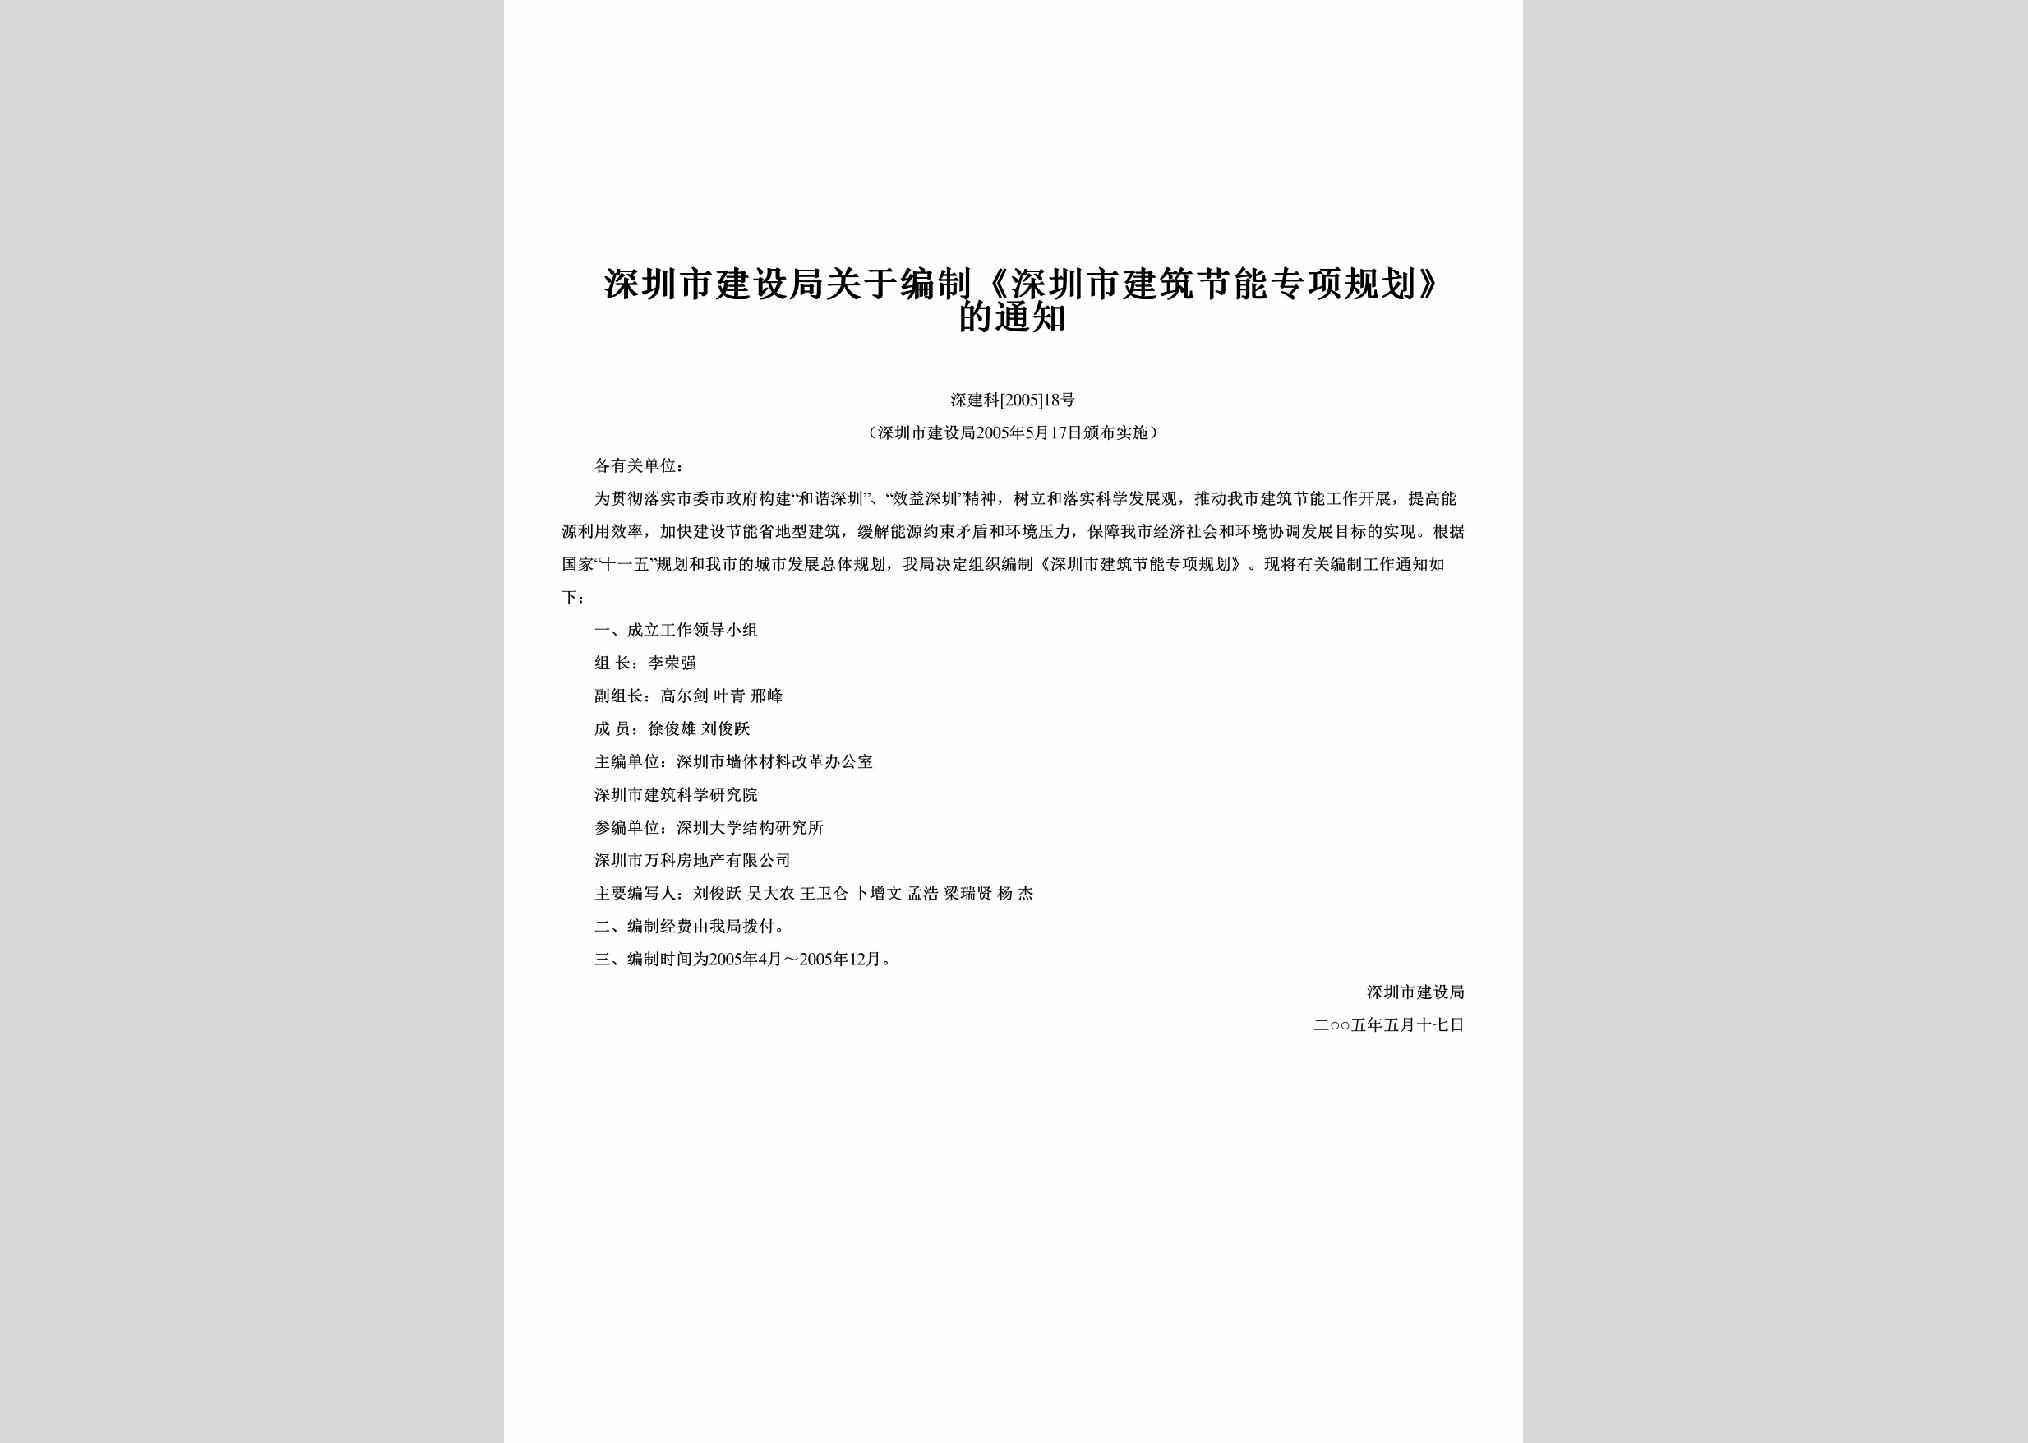 深建科[2005]18号：关于编制《深圳市建筑节能专项规划》的通知